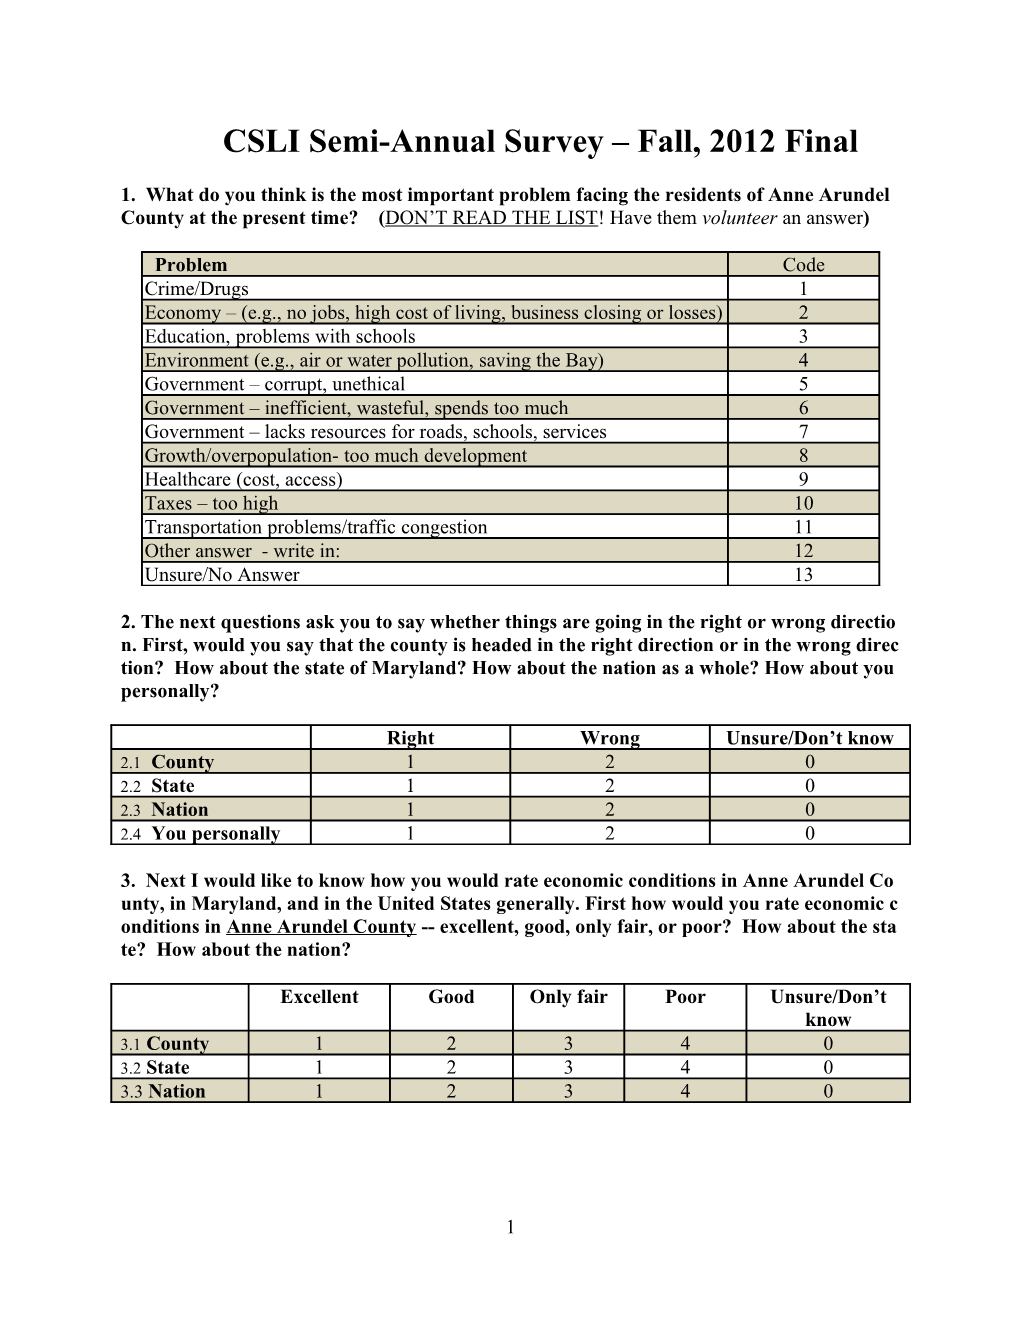 CSLI Semi-Annual Survey Fall, 2012 Final